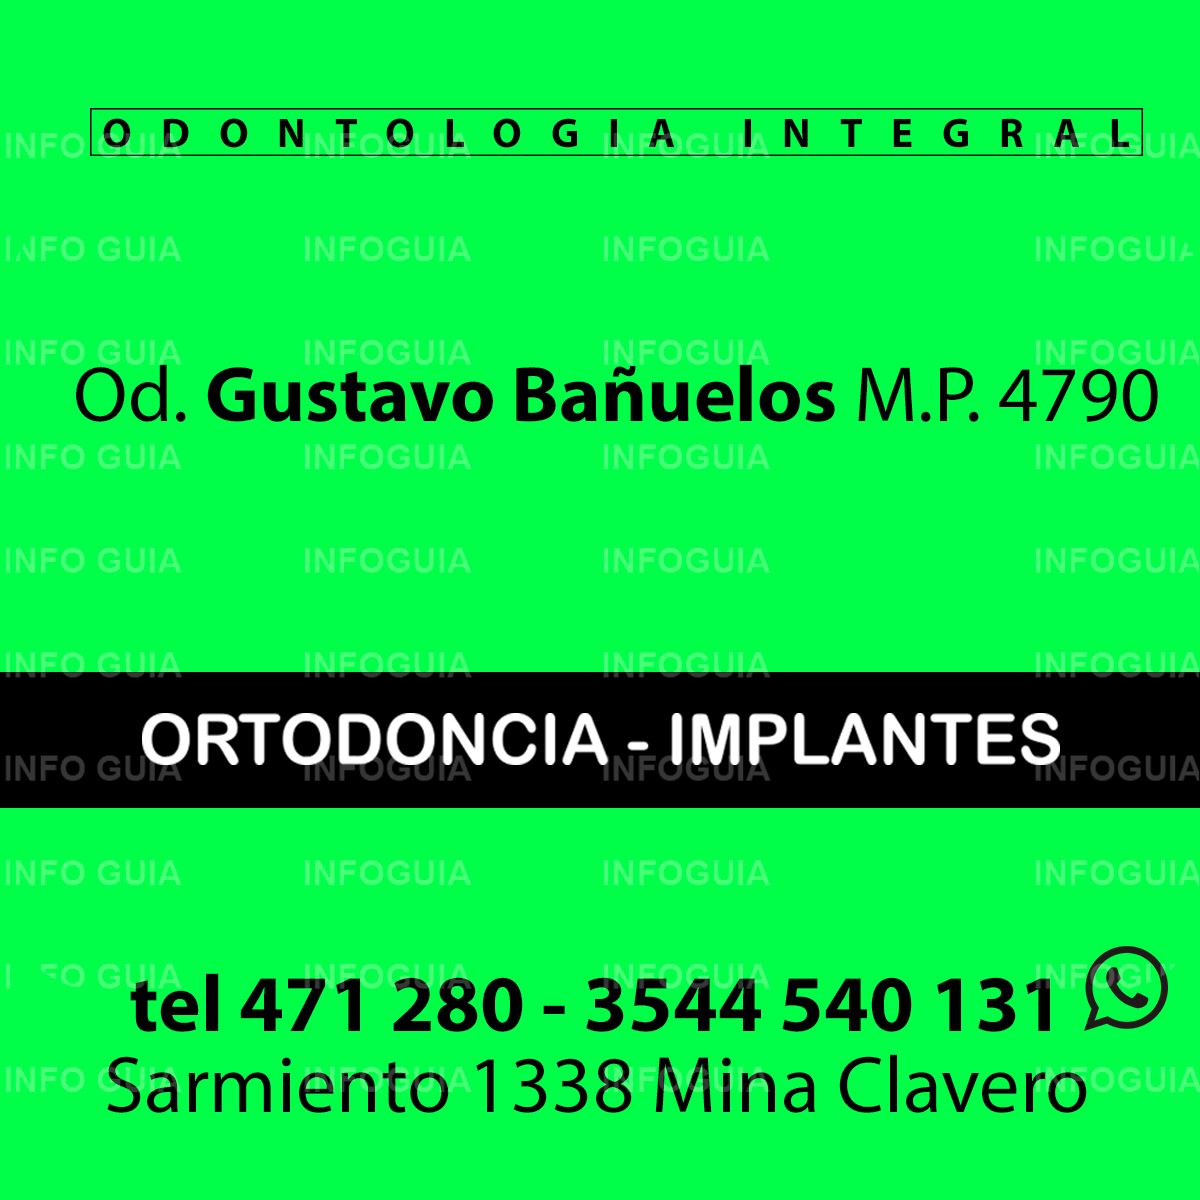 Odontología Integral Gustavo Bañuelos - InfoGuia Traslasierra - Ortodoncias  - Implantes